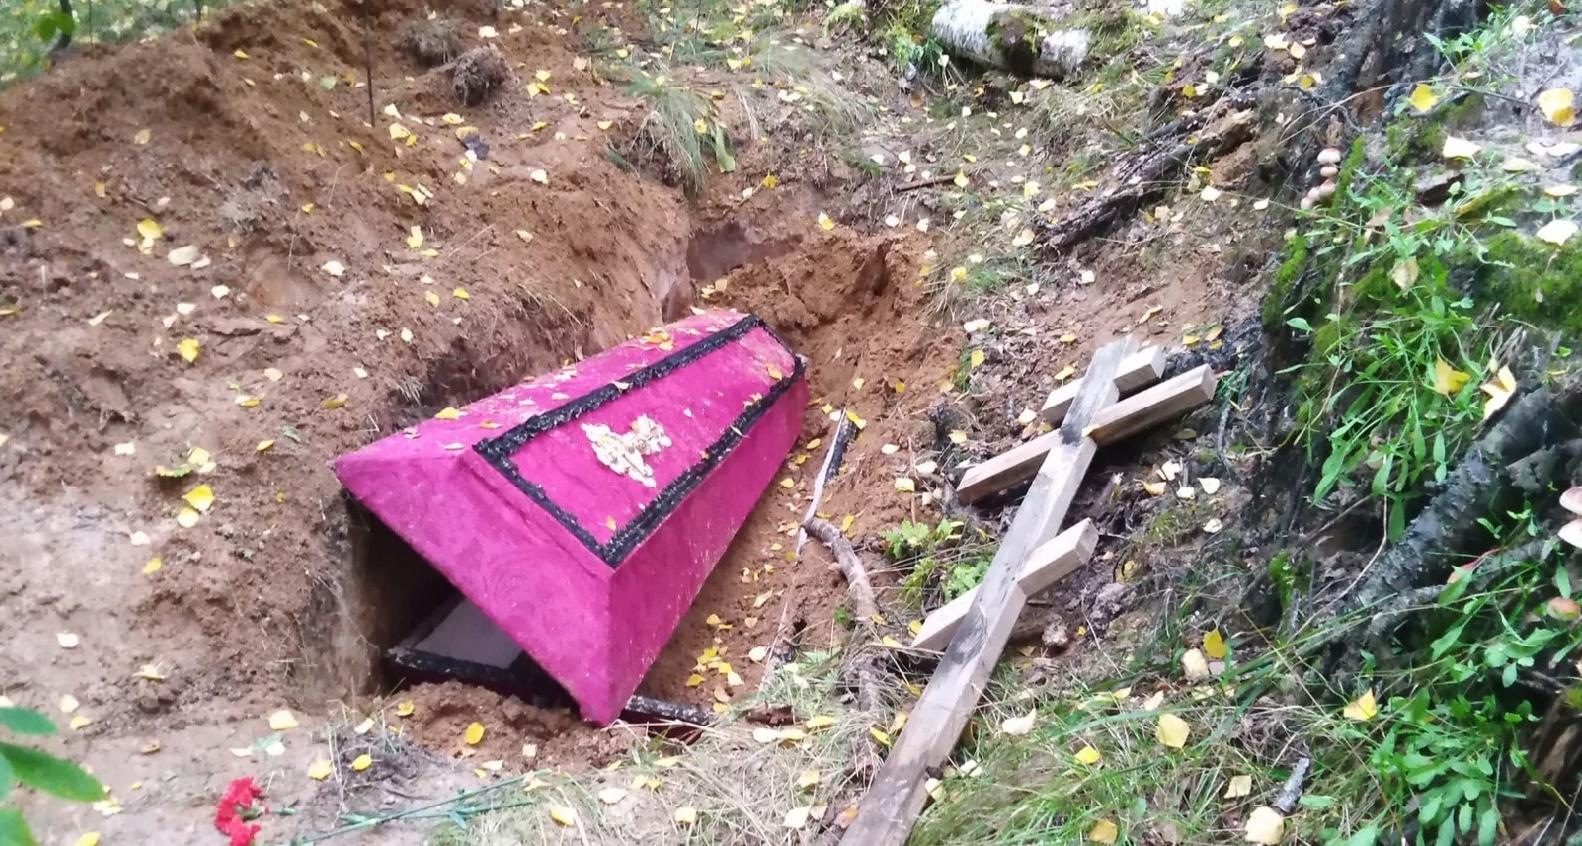  Бандиты или сектанты: гроб с крестом нашли в лесу Ярославля